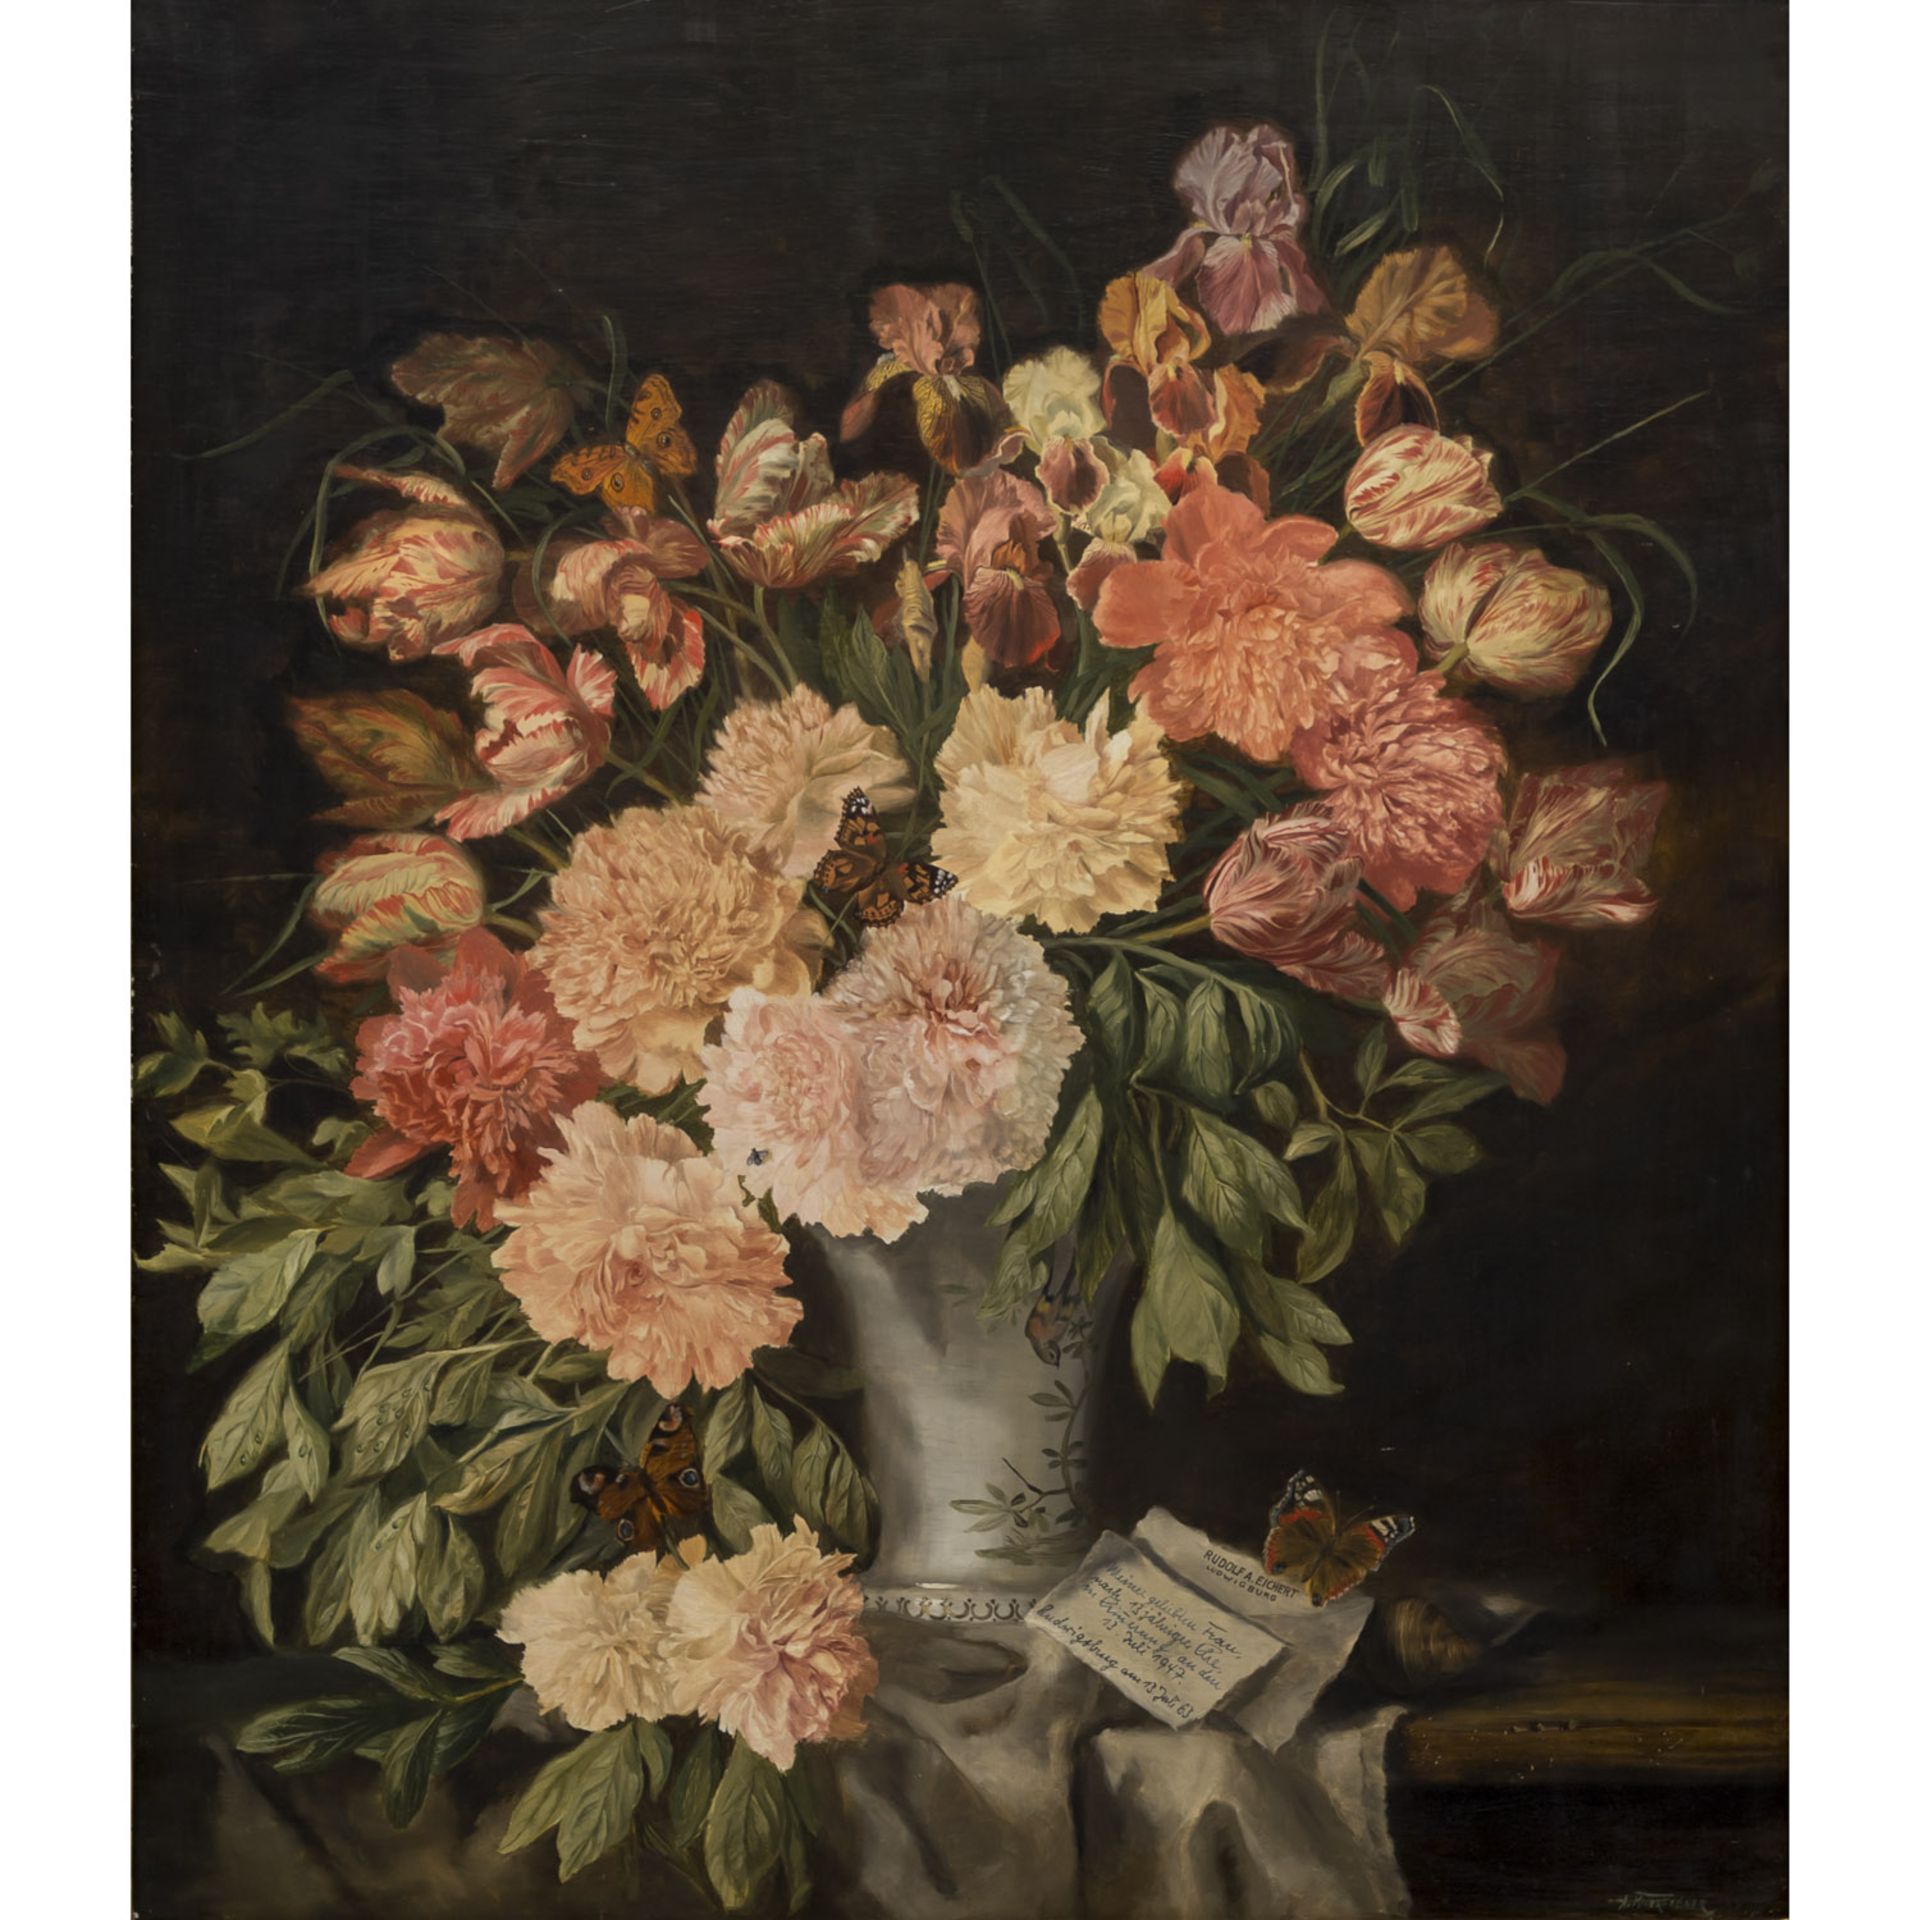 MITTERFELLNER, ANDREAS (1912-1972) "Blumenvase mit Tulpen und Schmetterlingen"Öl auf Holz, signiert,